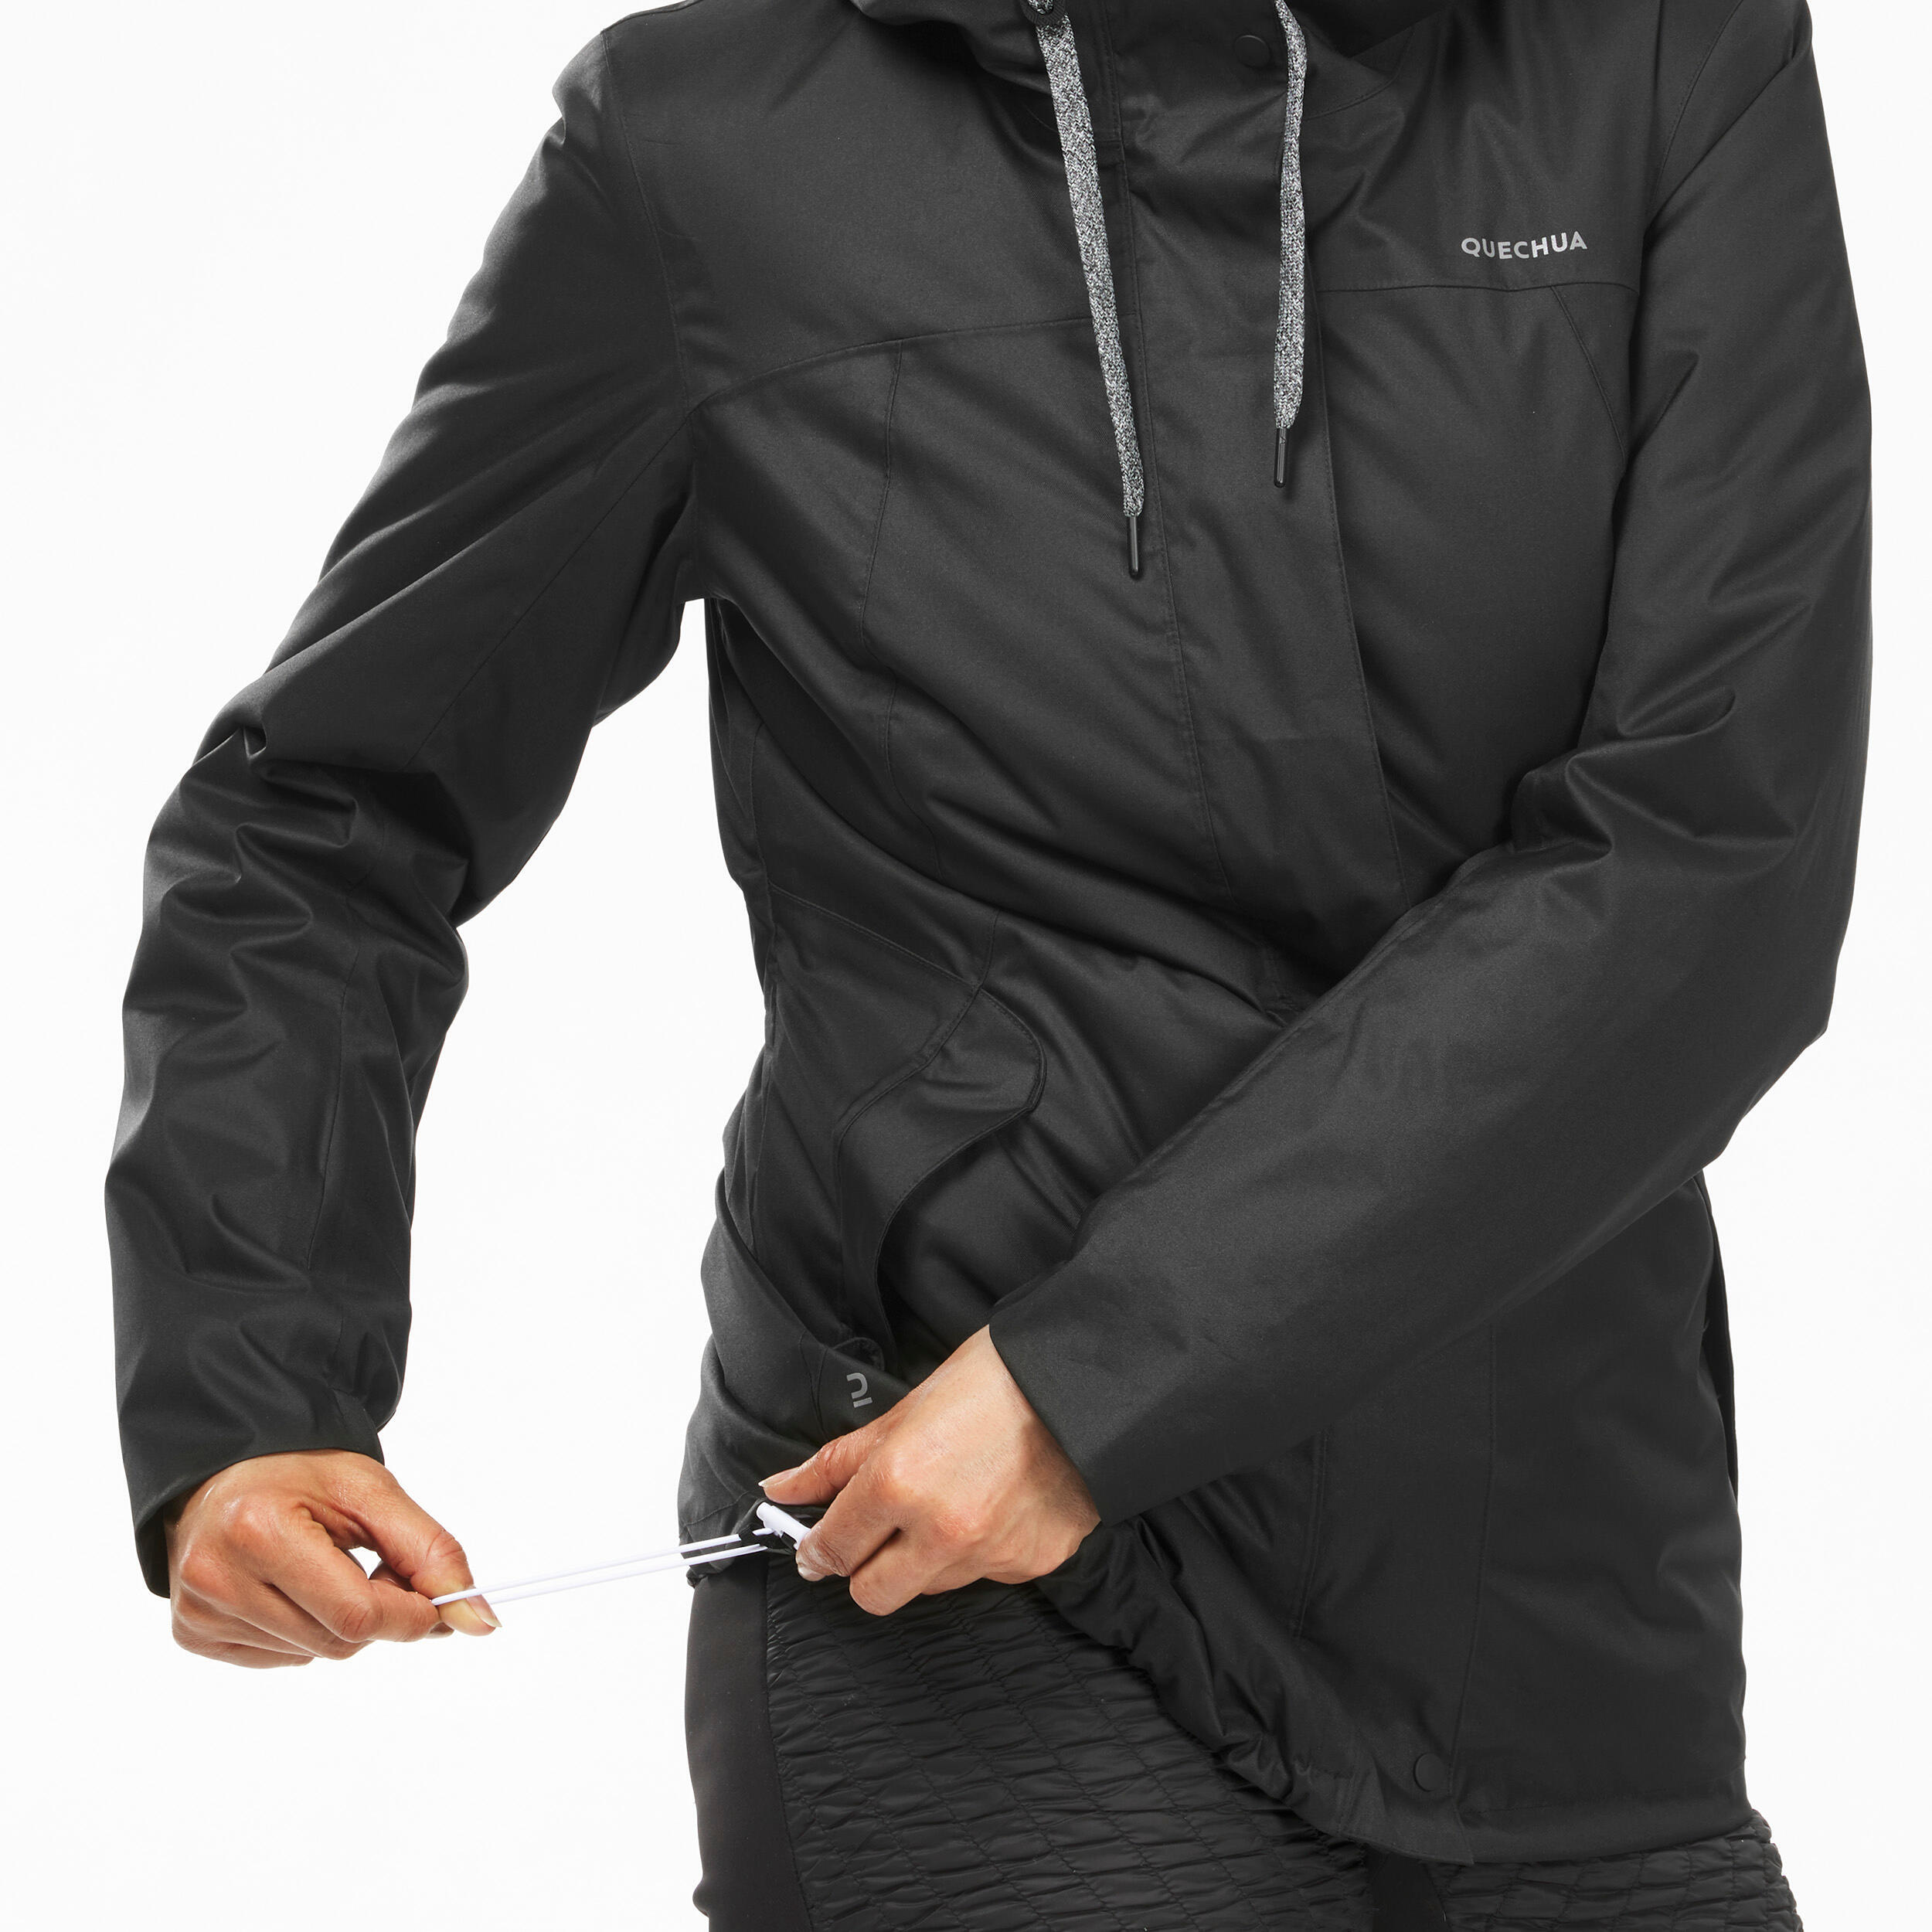 Women’s hiking waterproof winter jacket - SH500 -10°C 10/11